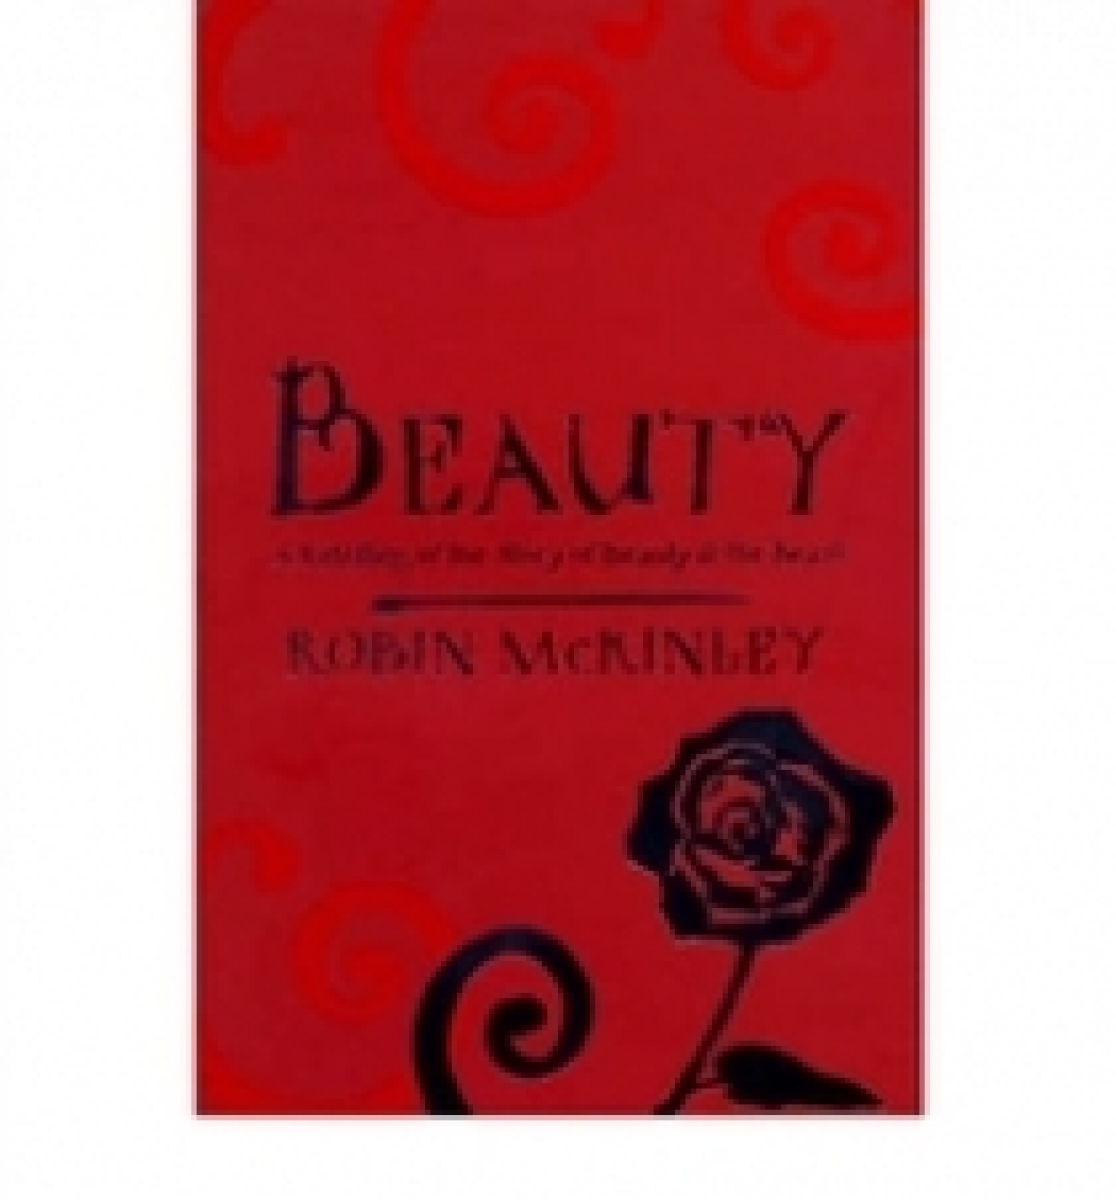 Robin M. Beauty 